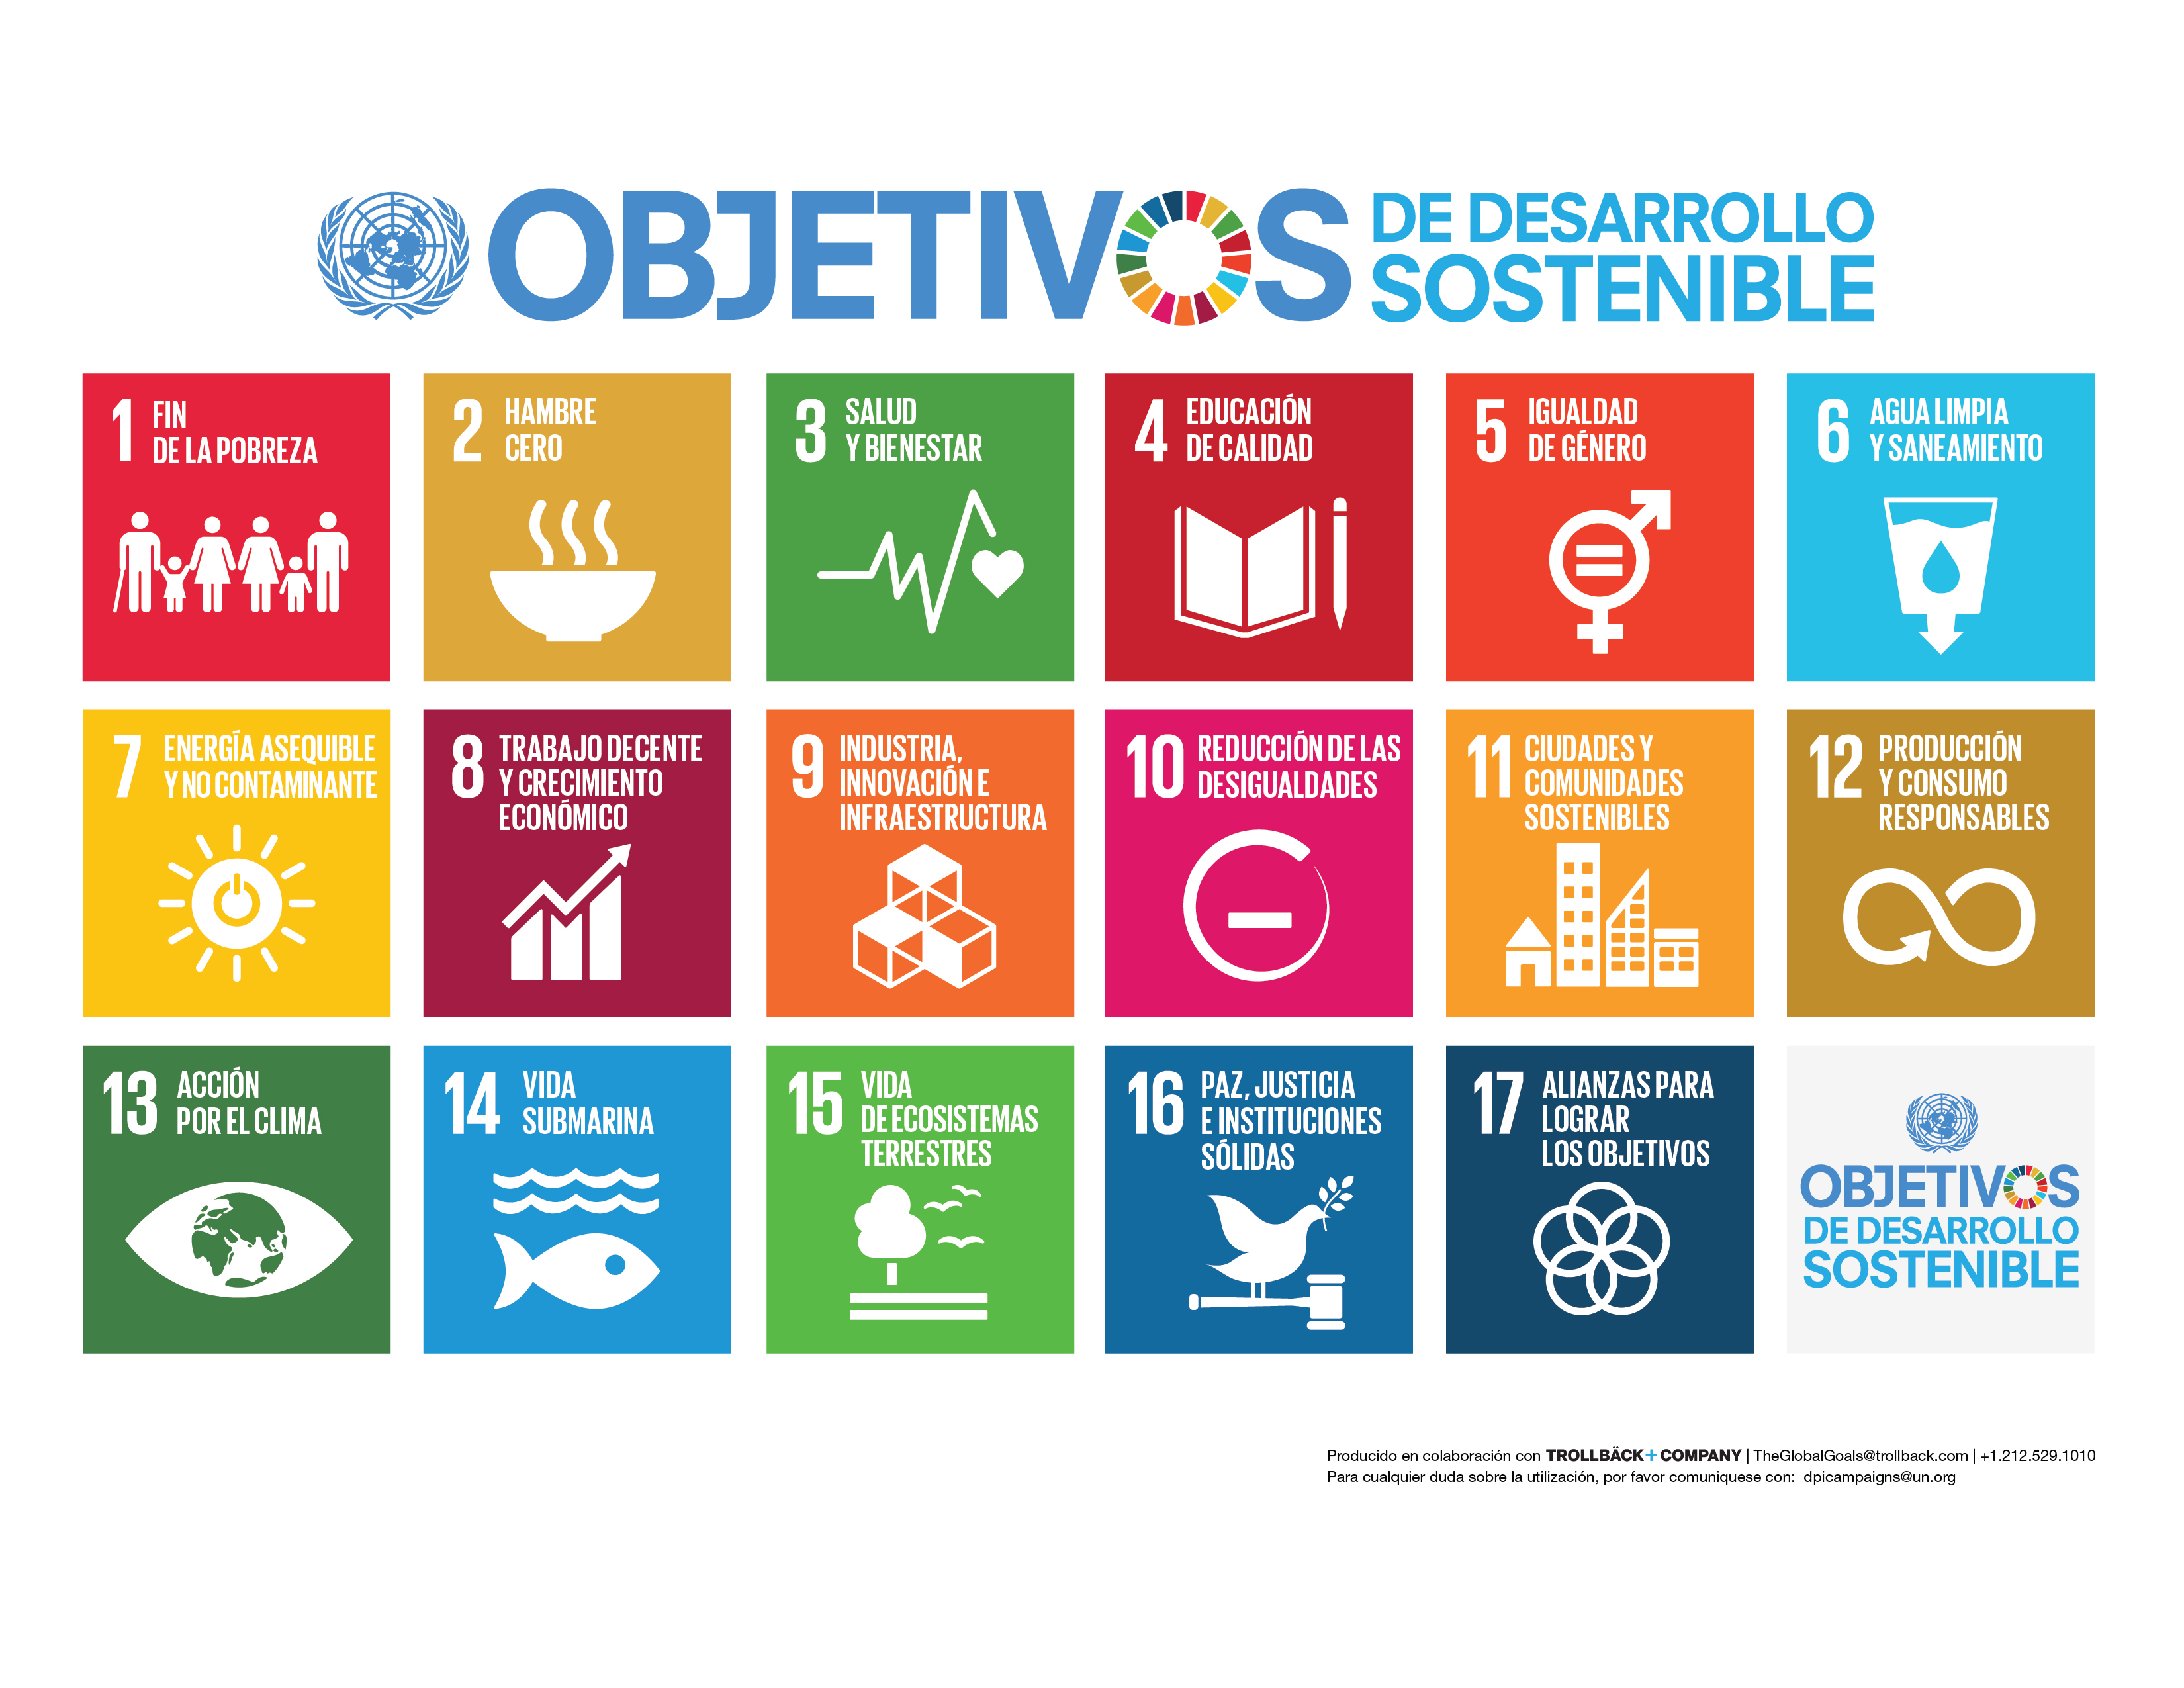 Objetivos de Desarrollo Sostenible propuestos por la ONU. Foto: www.un.org